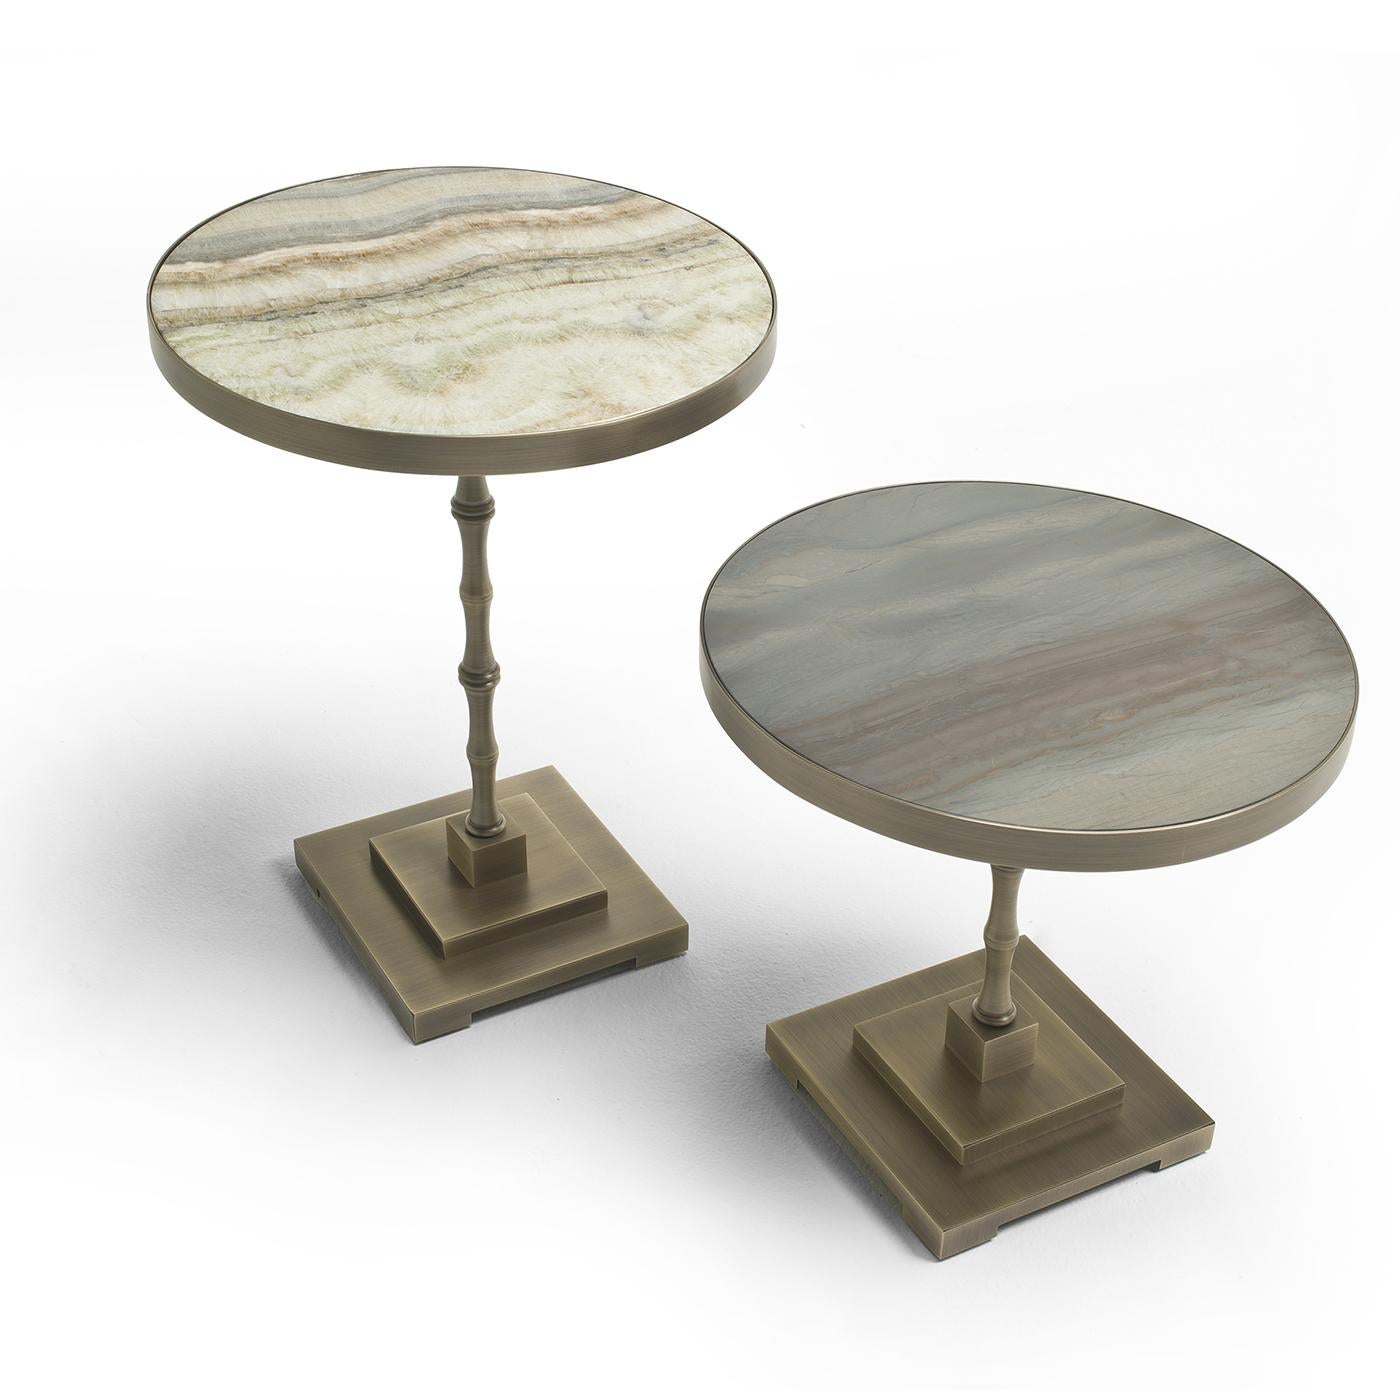 Der Marmora Beistelltisch vereint eine ganze Reihe von Inspirationen in sich. Auf einem gestapelten quadratischen Sockel steht der Tisch auf einem bambusähnlichen Stiel und ist mit einer runden Fläche versehen. Die Tischplatte ist aus Onice-Marmor